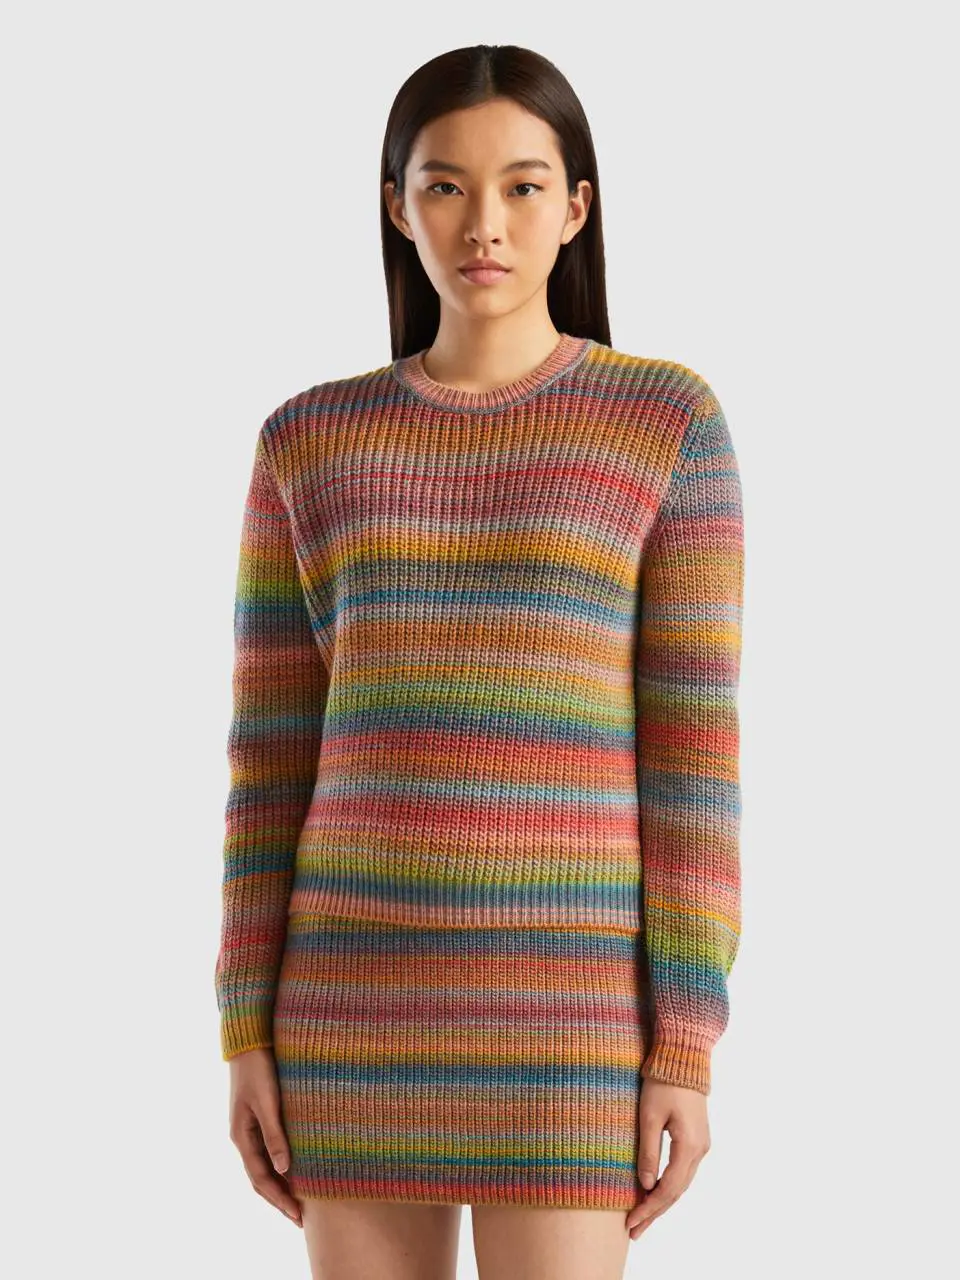 Benetton multicolor striped sweater. 1